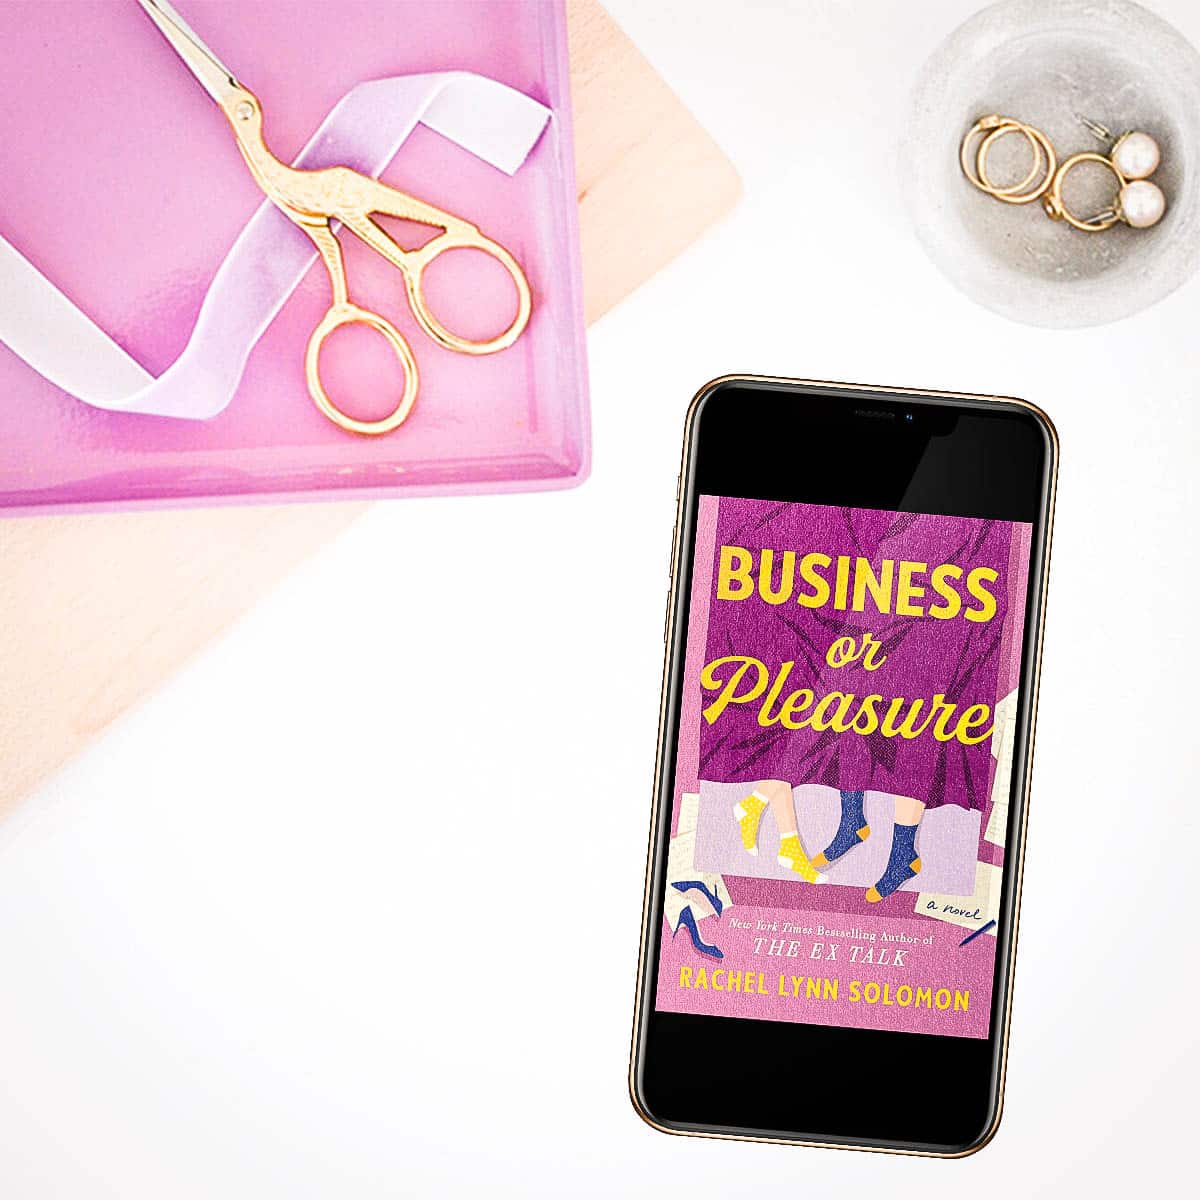 Business or Pleasure by Rachel Lynn Solomon-featured